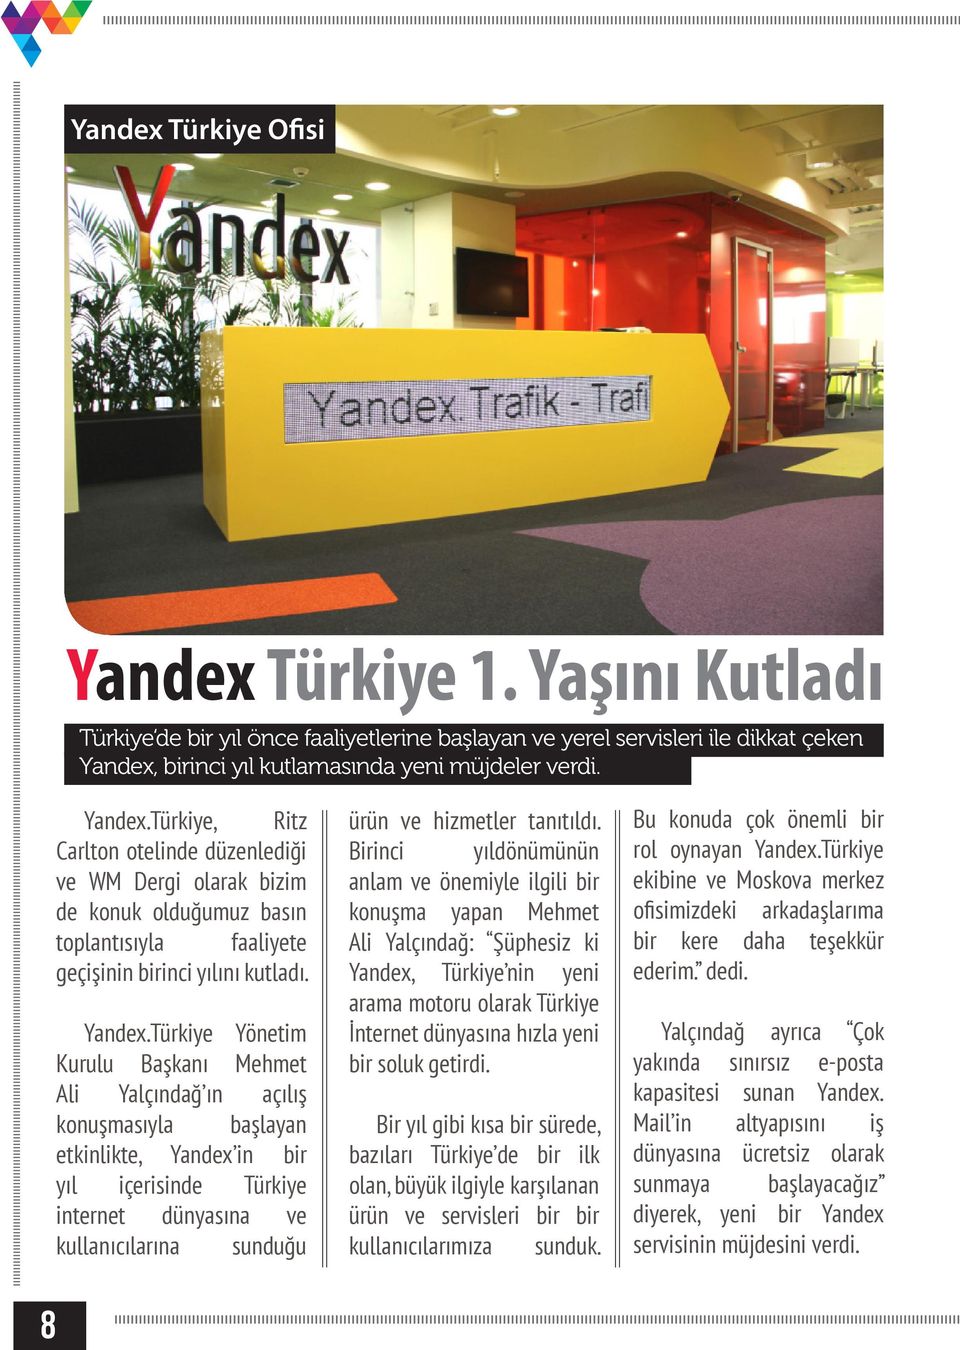 Türkiye Yönetim Kurulu Başkanı Mehmet Ali Yalçındağ ın açılış konuşmasıyla başlayan etkinlikte, Yandex in bir yıl içerisinde Türkiye internet dünyasına ve kullanıcılarına sunduğu ürün ve hizmetler